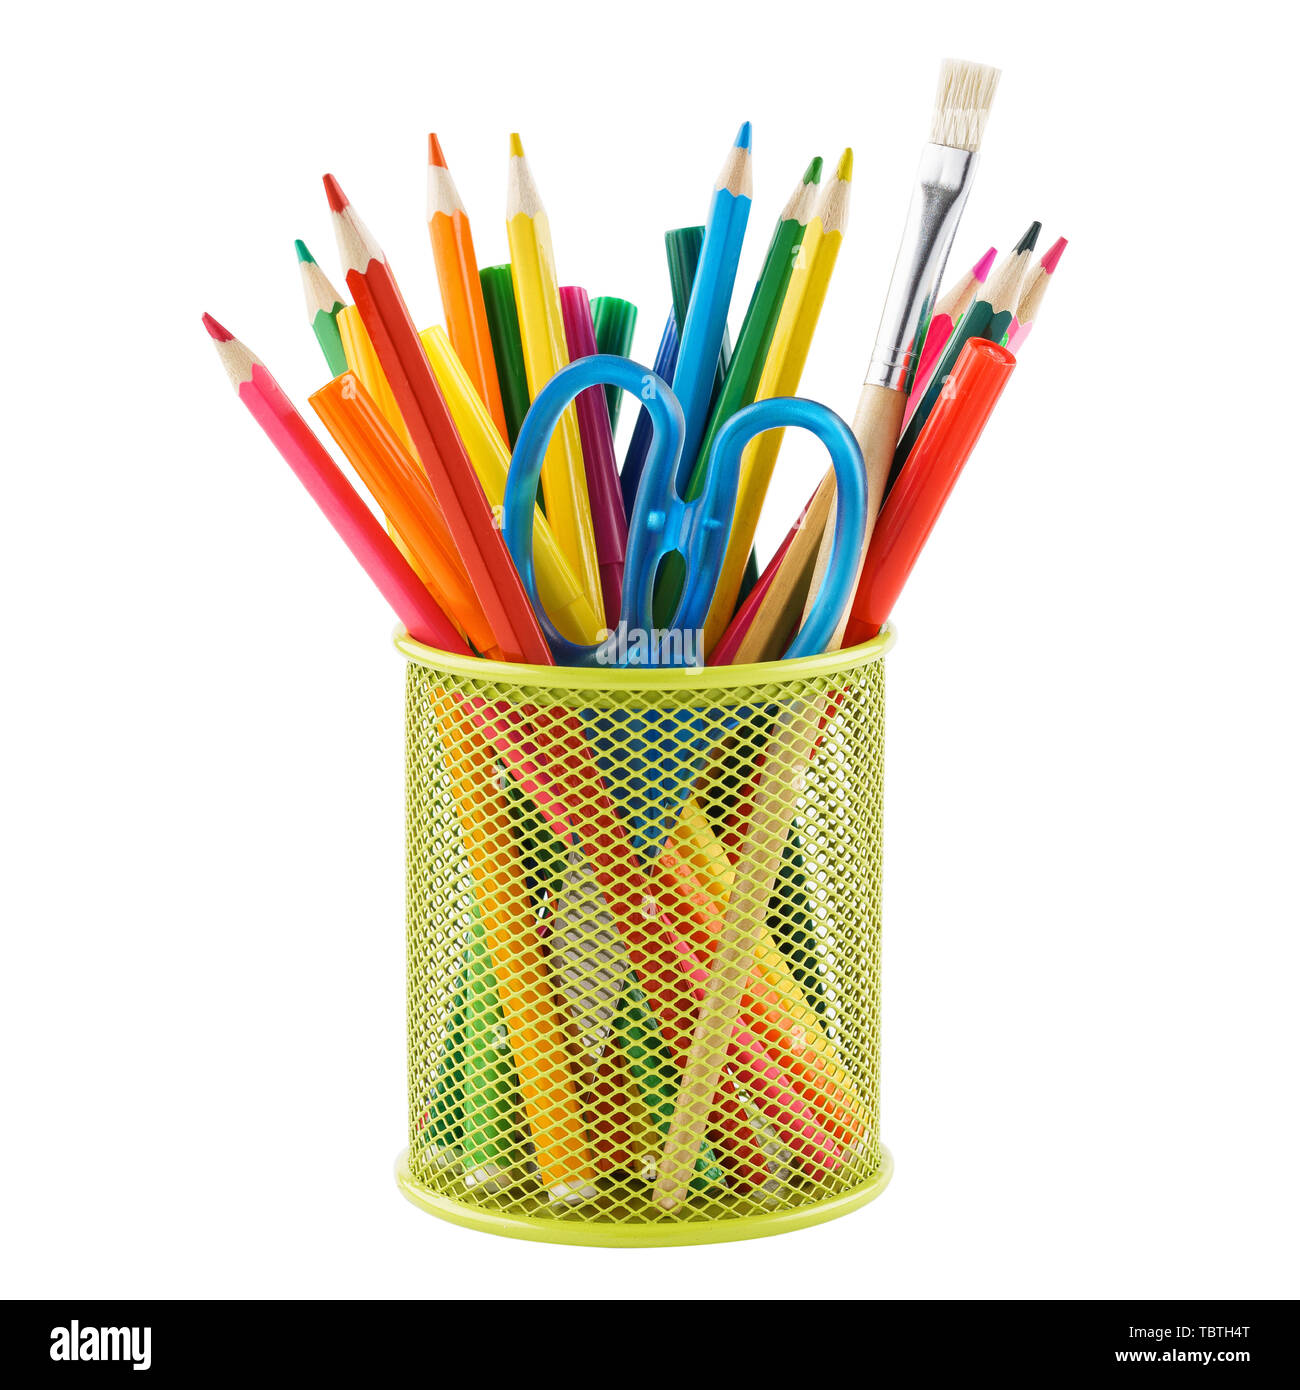 Buntstifte und verschiedenen bunten Schreibwaren für die Schule in einem Metall oder einer Schale. Auf weiß isoliert. Stockfoto